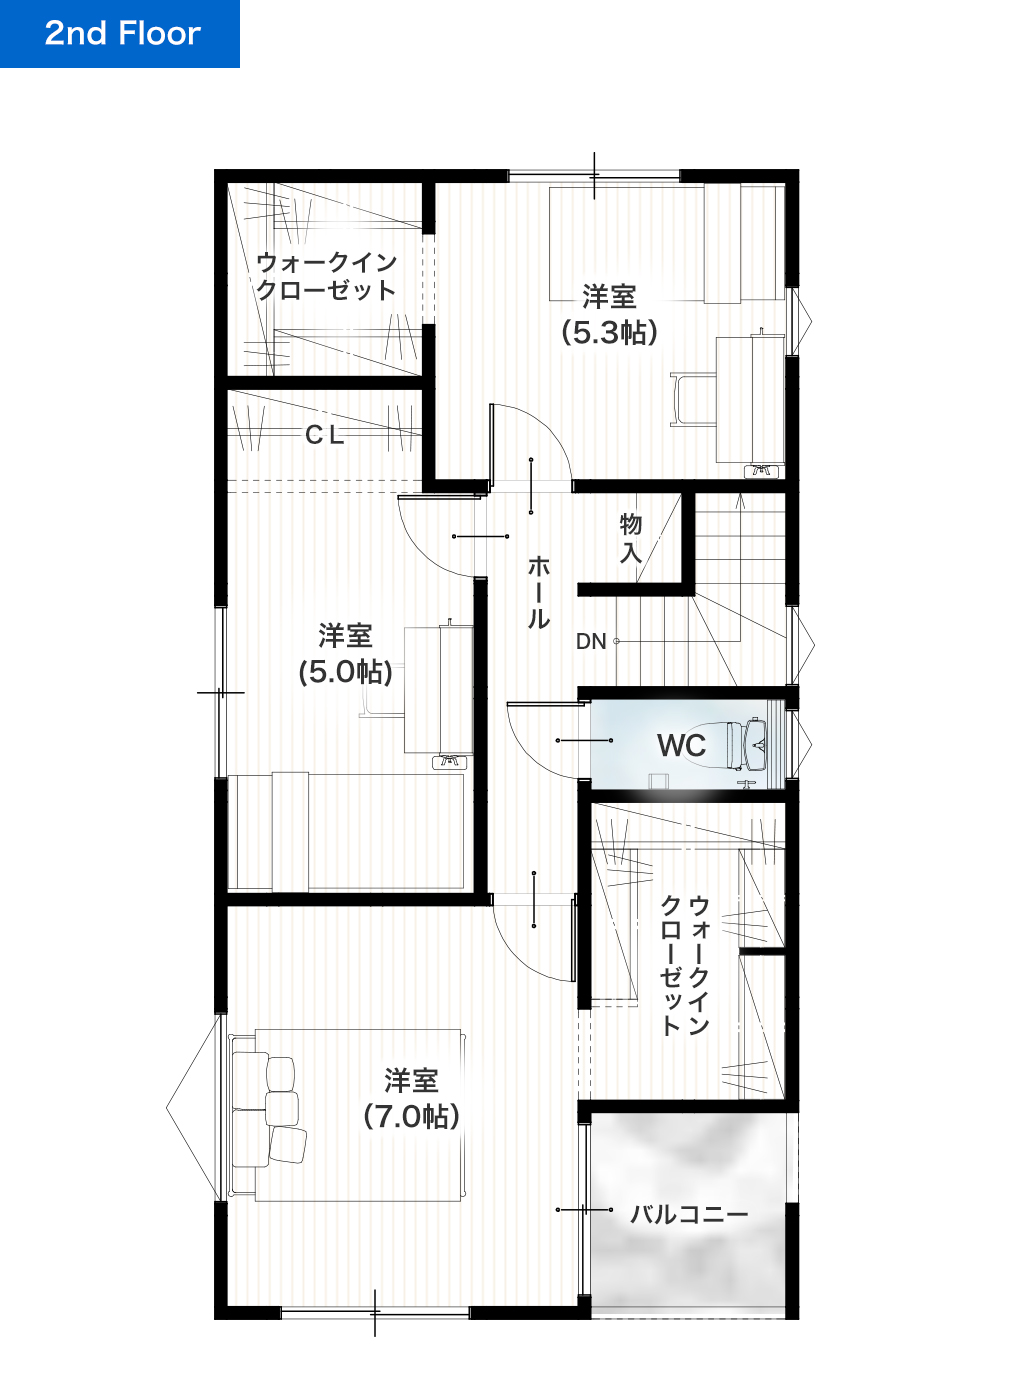 熊本市中央区帯山1丁目3期1号地 28坪 4LDK 建売・一戸建ての新築物件 2階間取り図